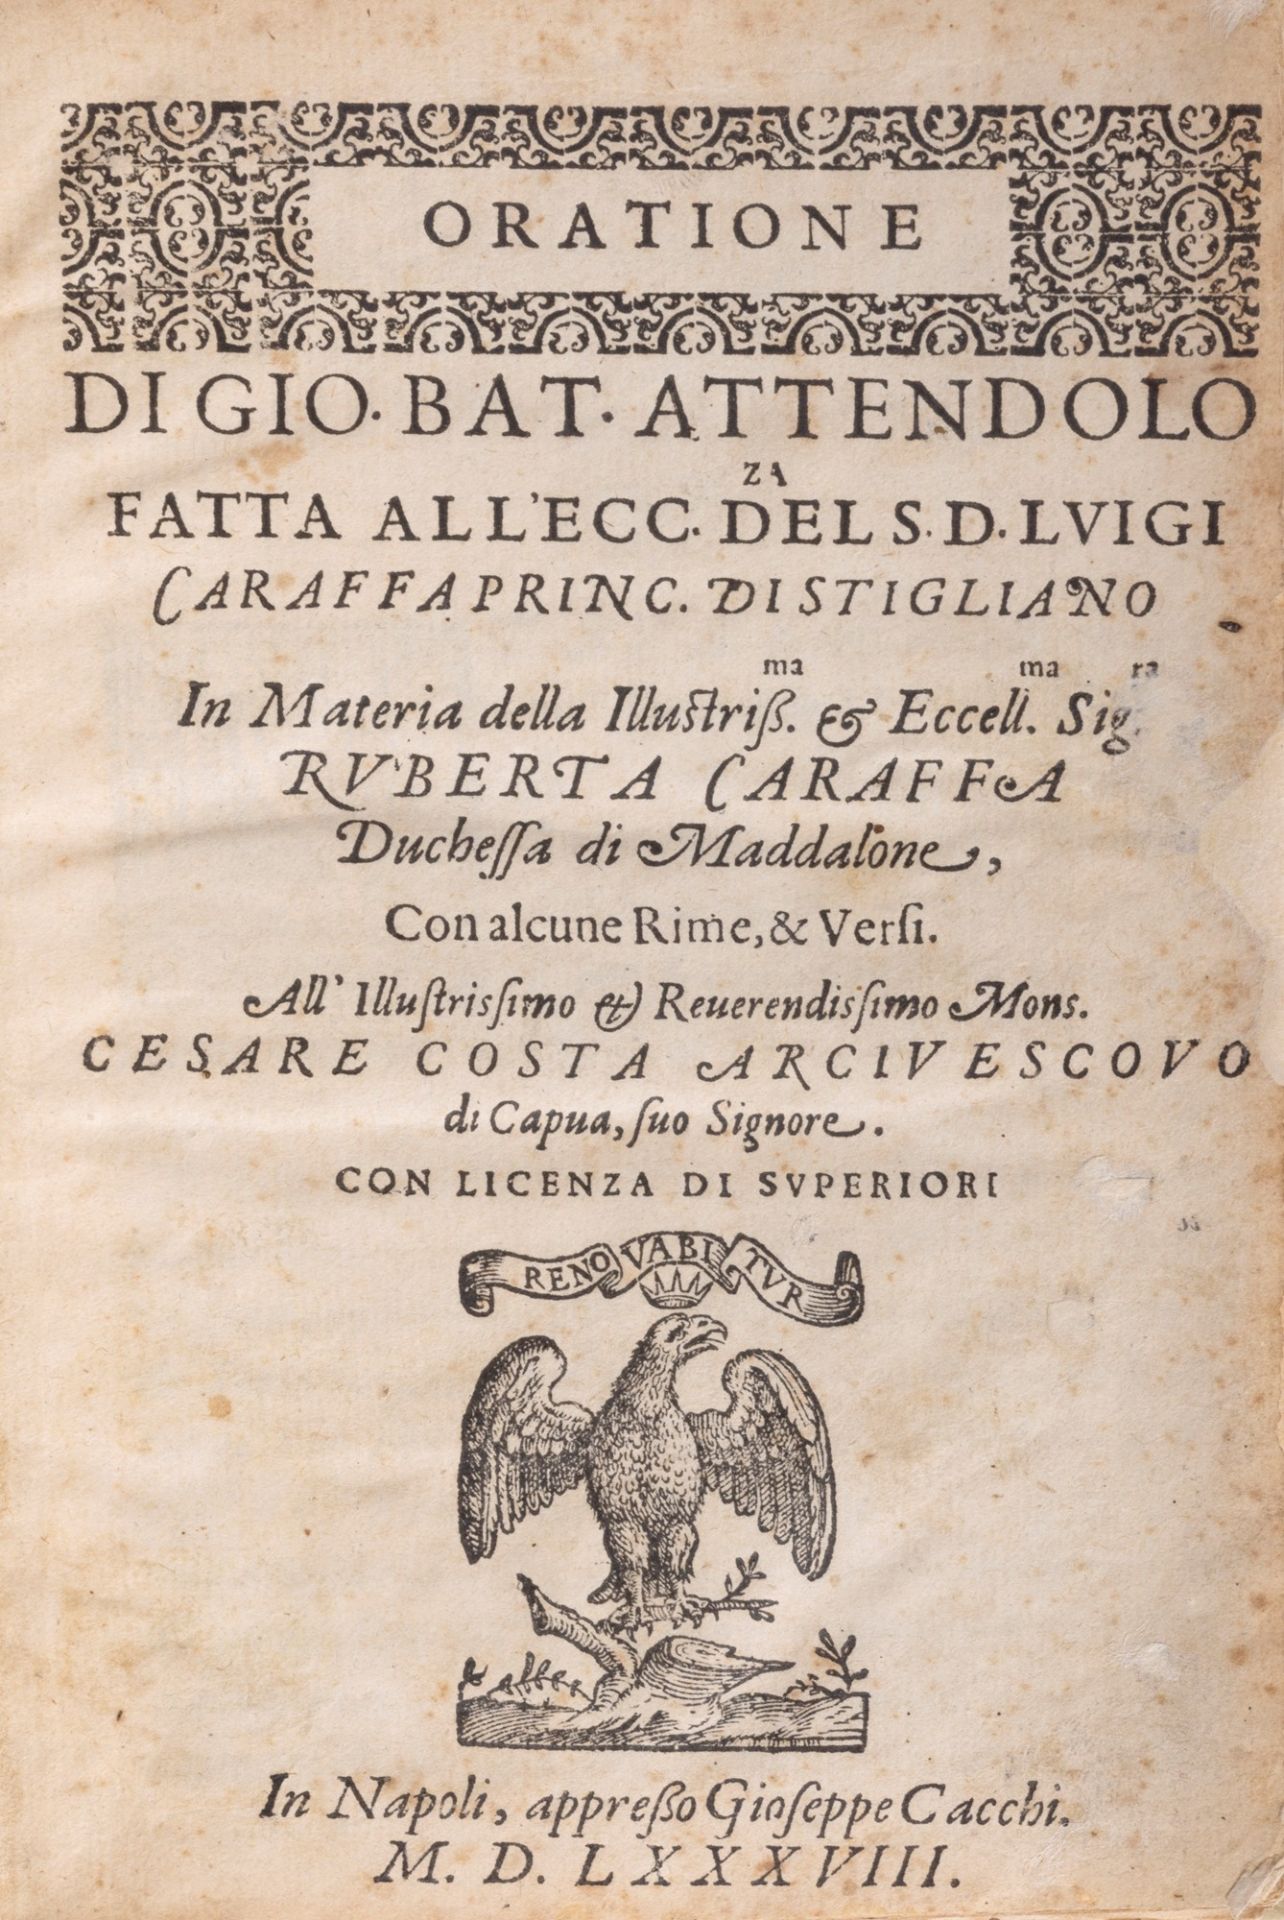 Attendolo, Gio Battista - Oration made to the excellence of s. d. Luigi Caraffa Principal of Stiglia